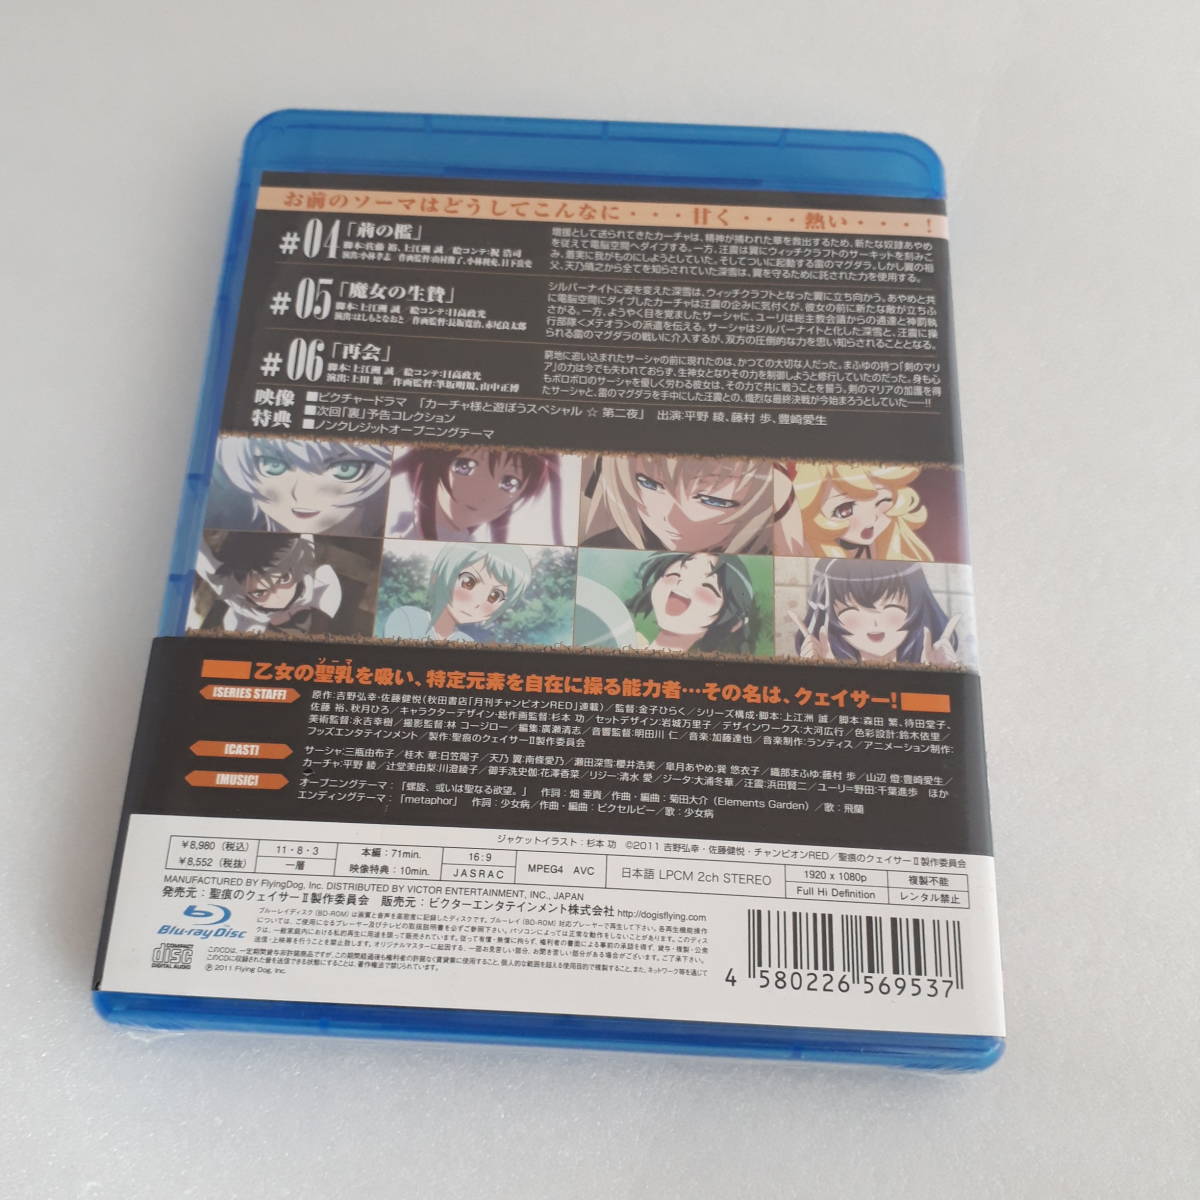 未開封 Blu-ray 聖痕のクェイサー Ⅱ ディレクターズカット版 Vol.1 Vol.2 第1巻 第2巻 セット 初回特典 マウスパッド ドラマCD付